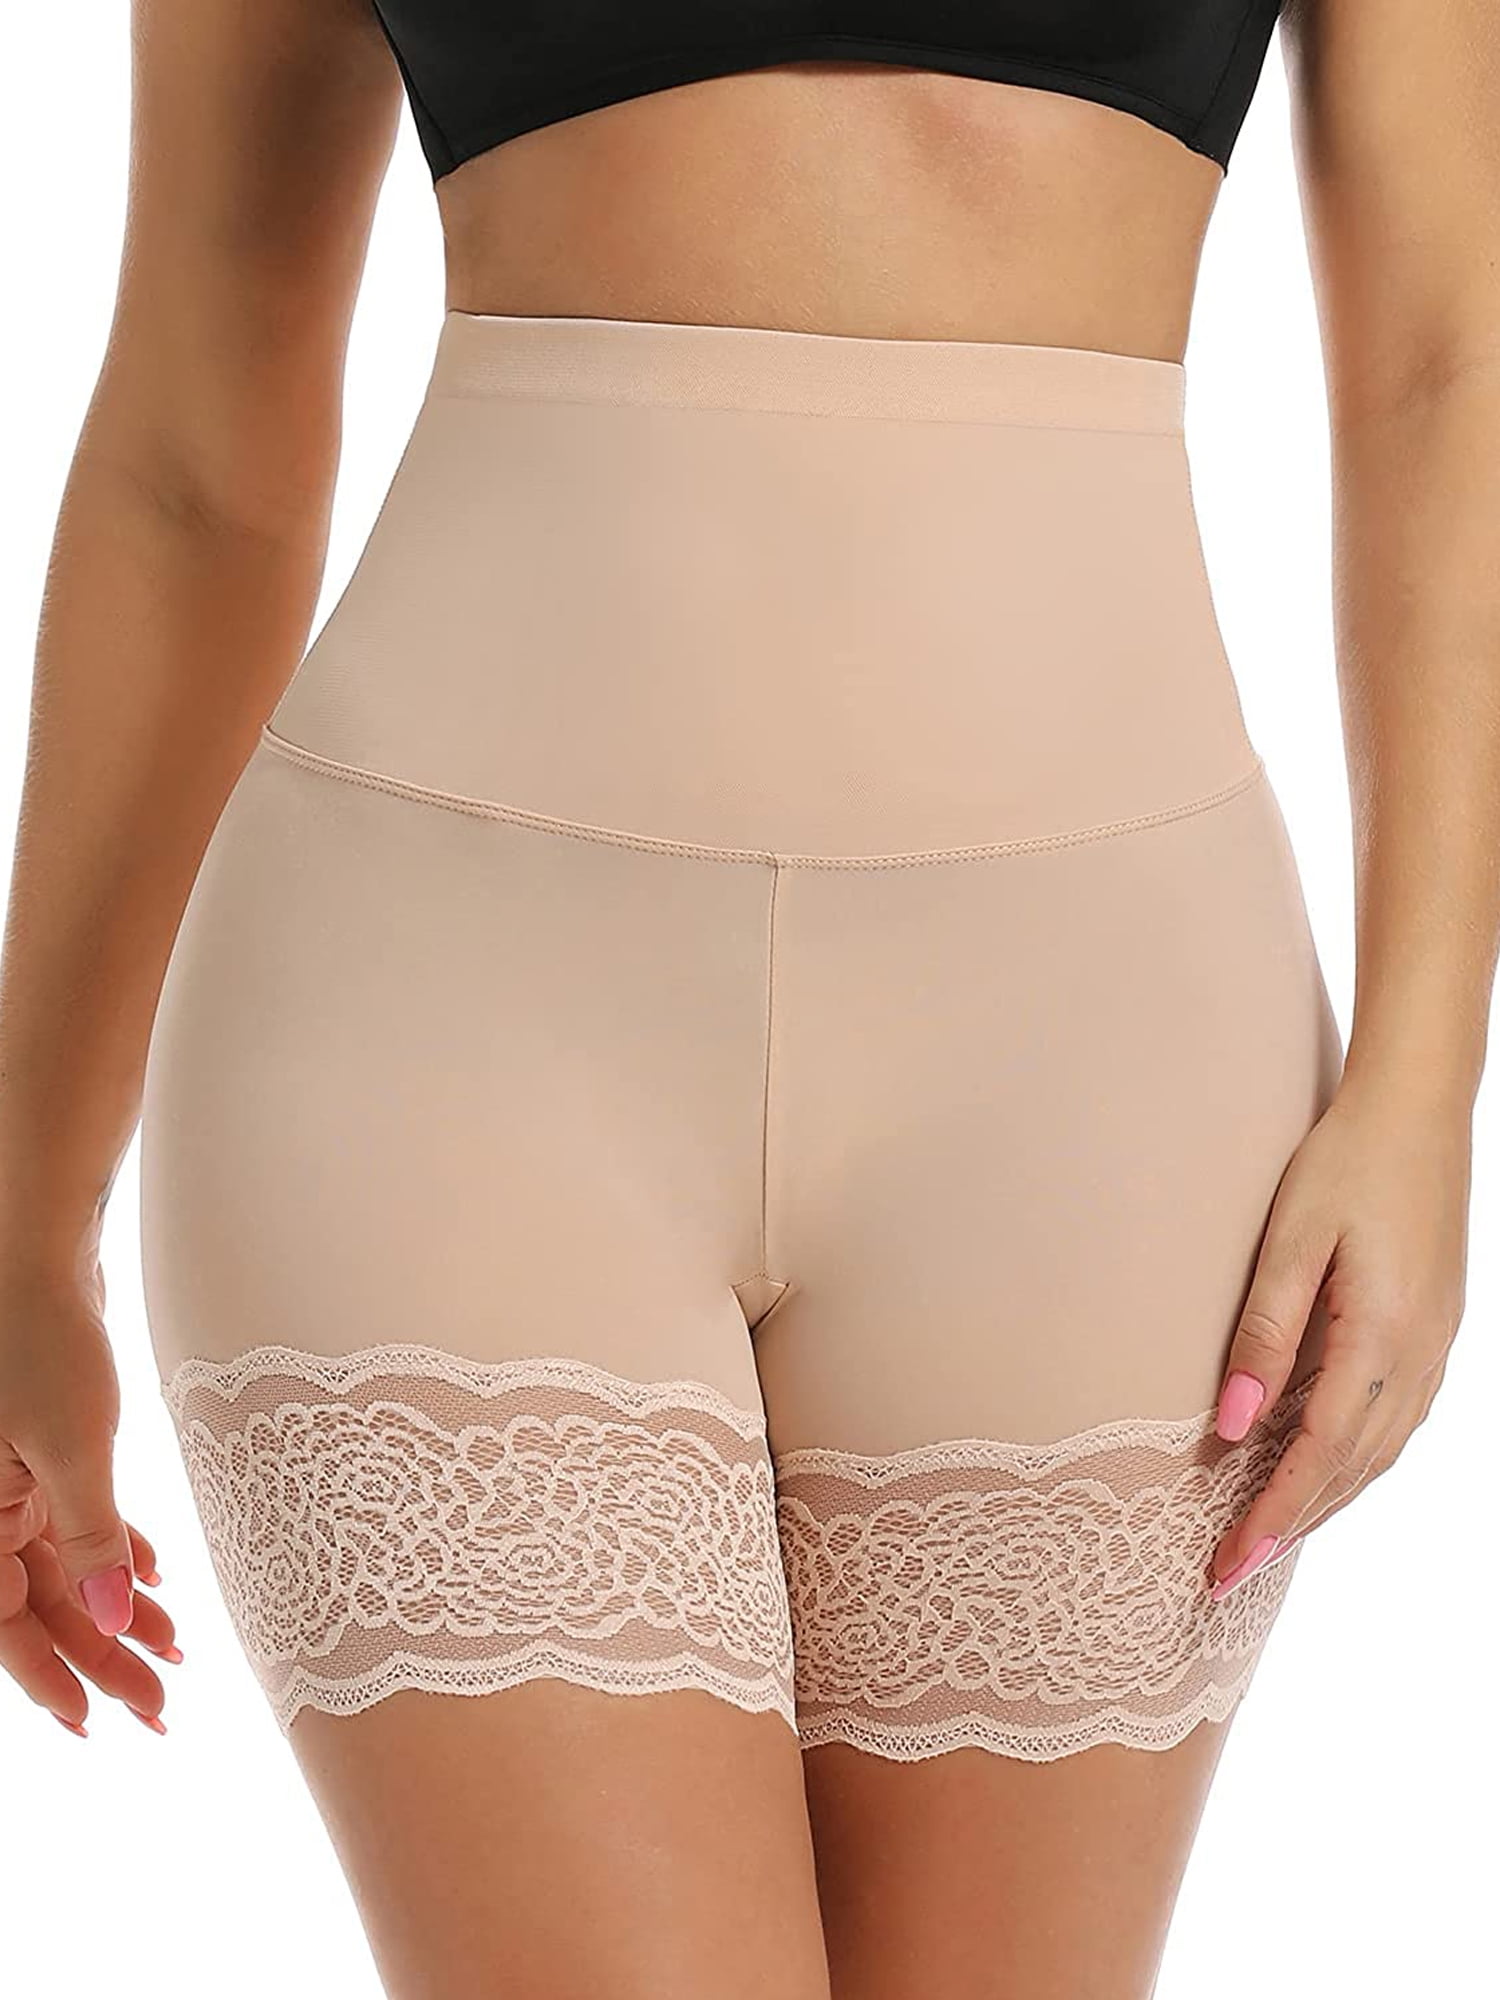 Wowen Seamless Shapewear Tummy Control Panty High Waist Lace Thigh